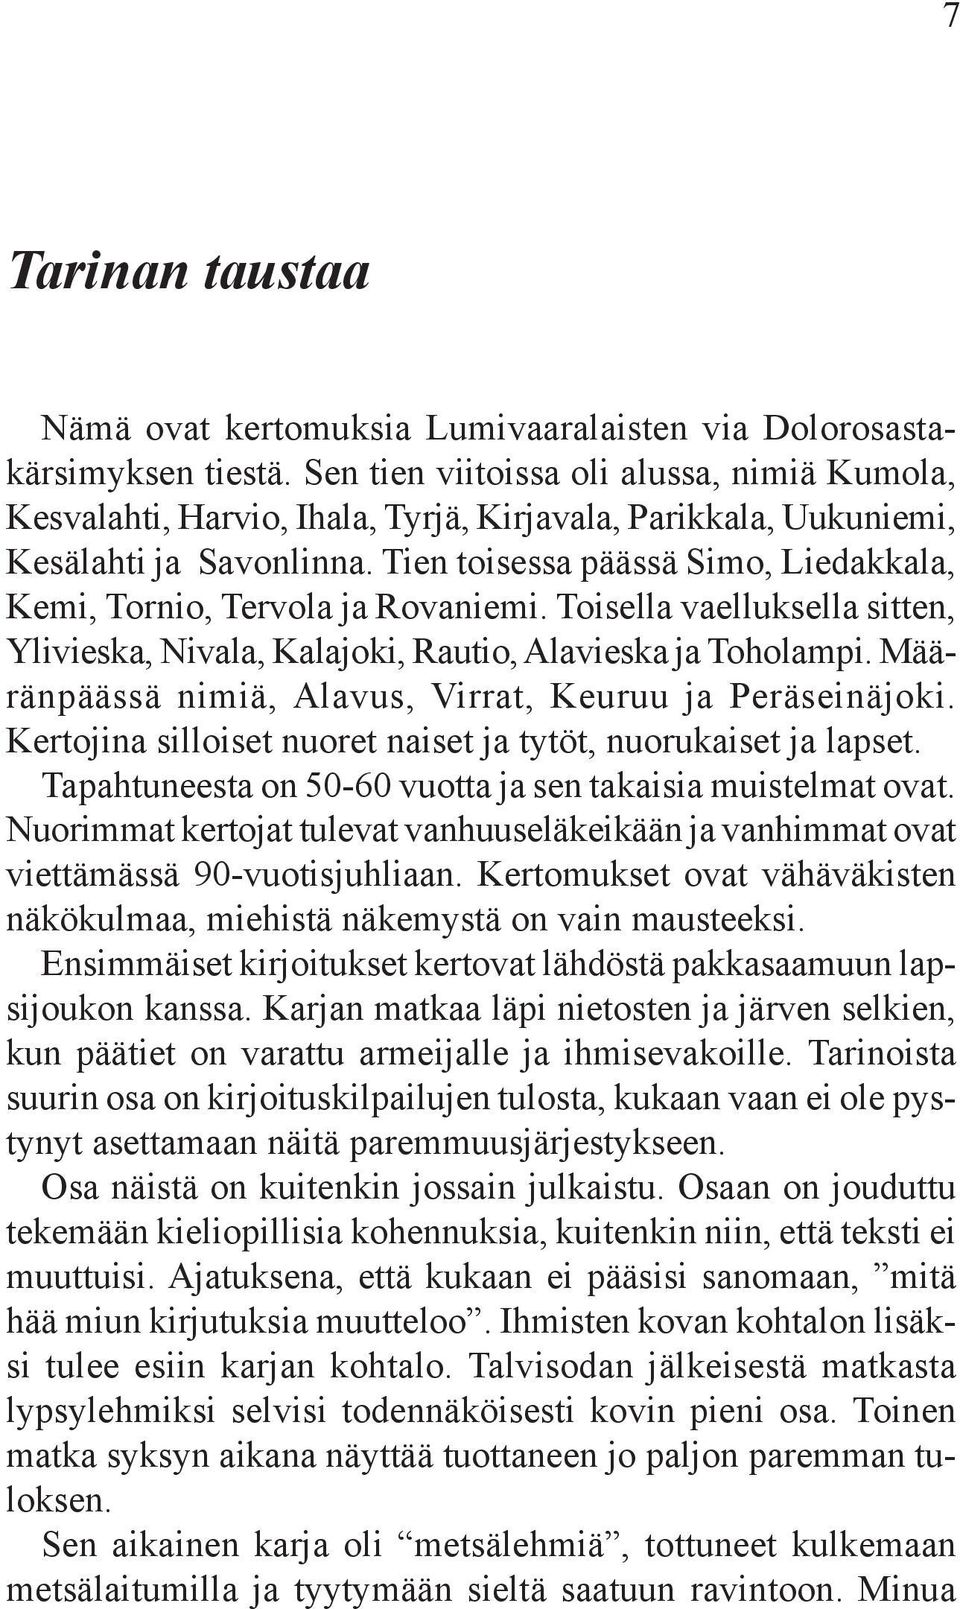 Tien toisessa päässä Simo, Liedakkala, Kemi, Tornio, Tervola ja Rovaniemi. Toisella vaelluksella sitten, Ylivieska, Nivala, Kalajoki, Rautio, Alavieska ja Toholampi.